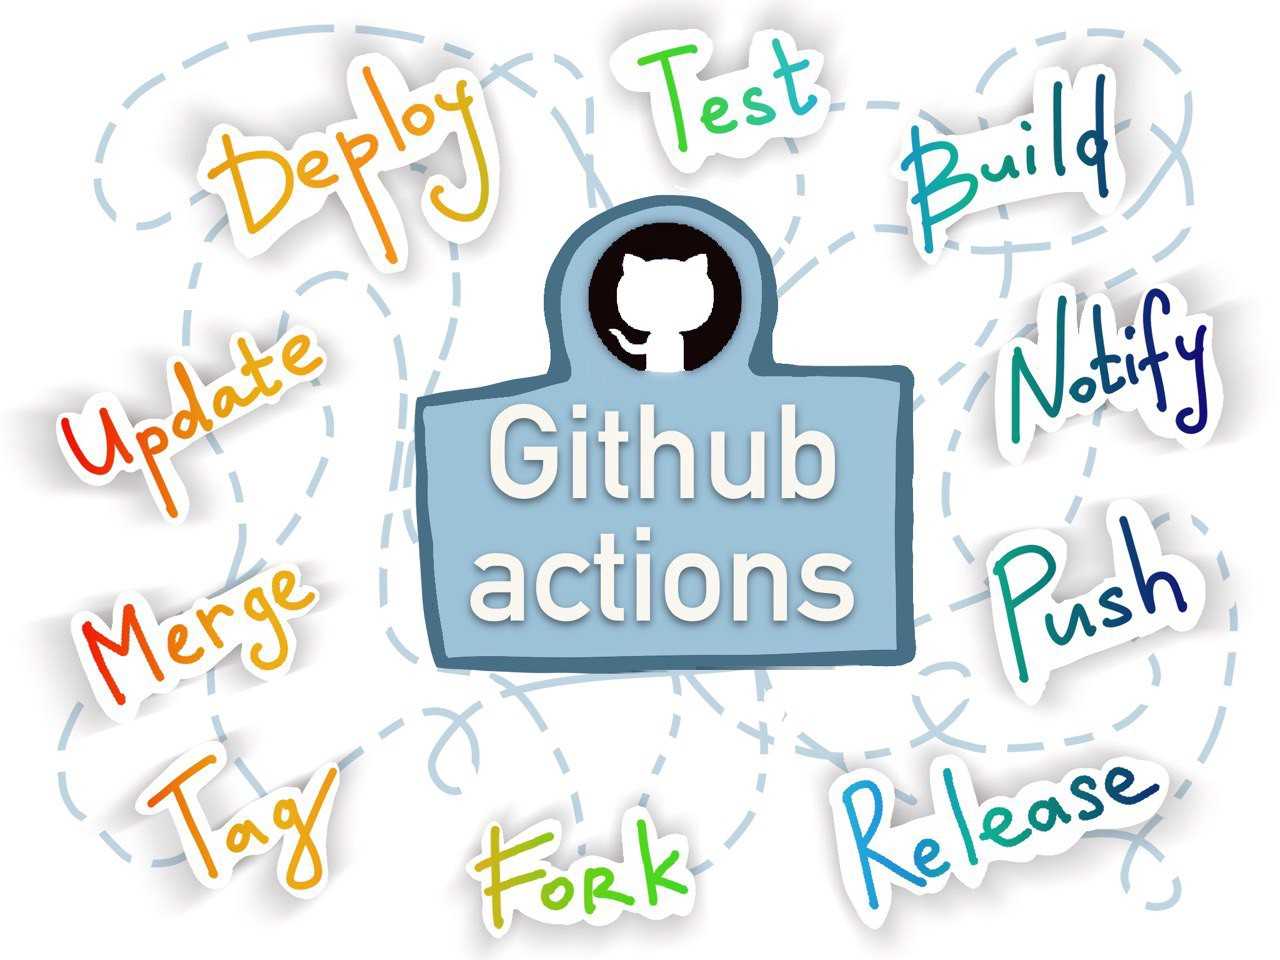 Обзор Github Actions: основные возможности, компоненты, создание workflow, работа с Events, Secrets и пример деплоя в ArgoCD